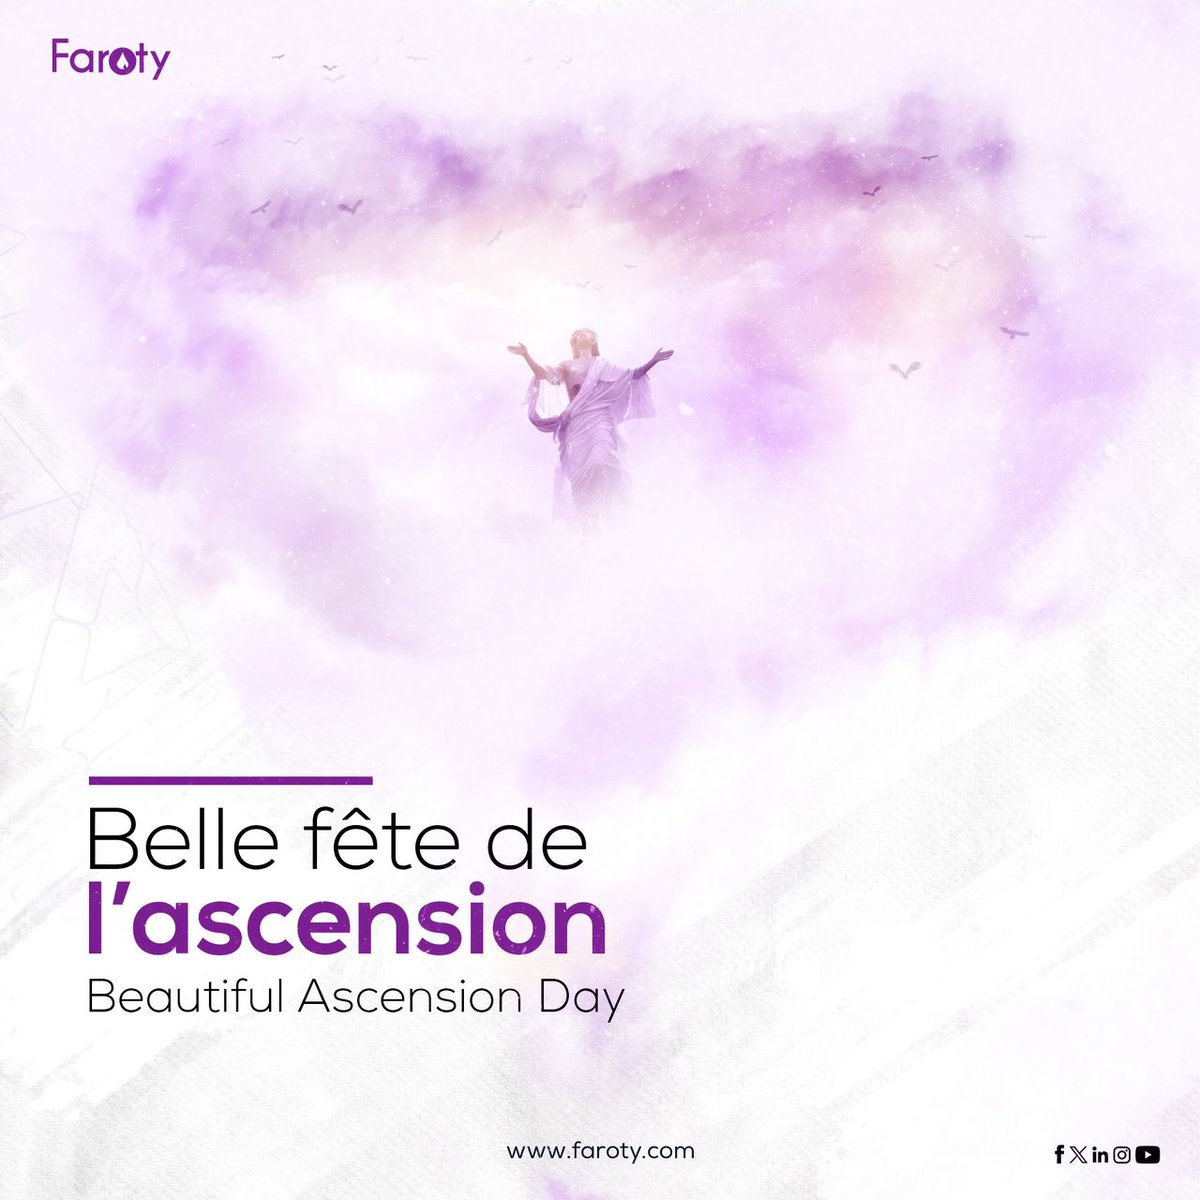 ☁️BONNE FÊTE DE L’ASCENSION À TOUTE NOTRE COMMUNAUTÉ CHRÉTIENNE. 💜✨ 

#Faroty #farotyisthelink #ascension #bonnefete